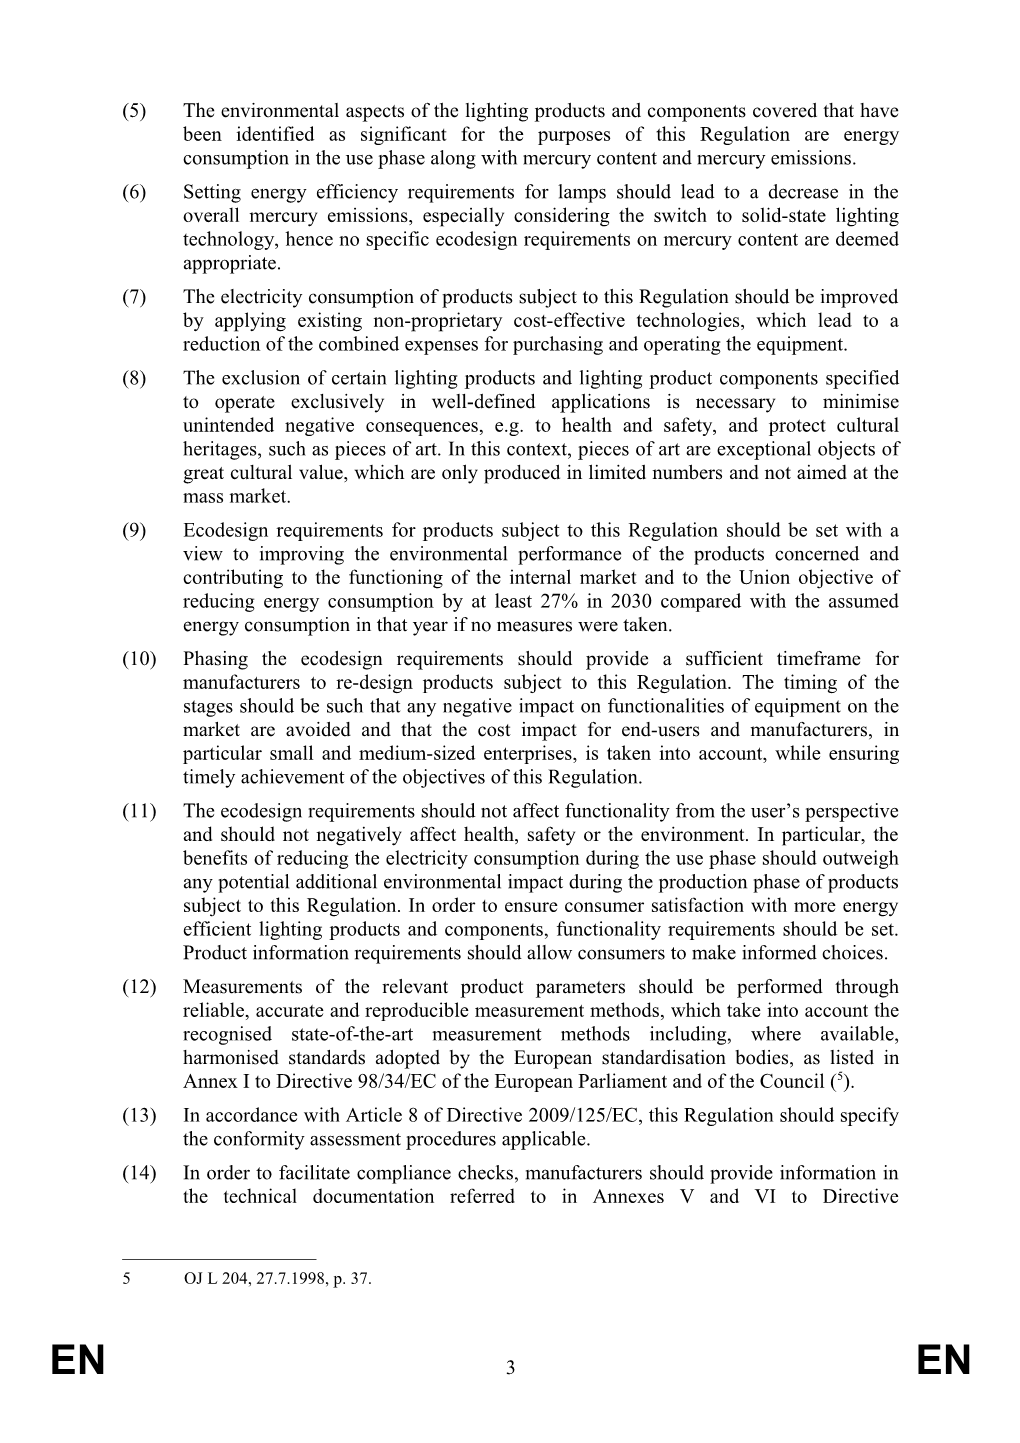 Commission Regulation (Eu) s2